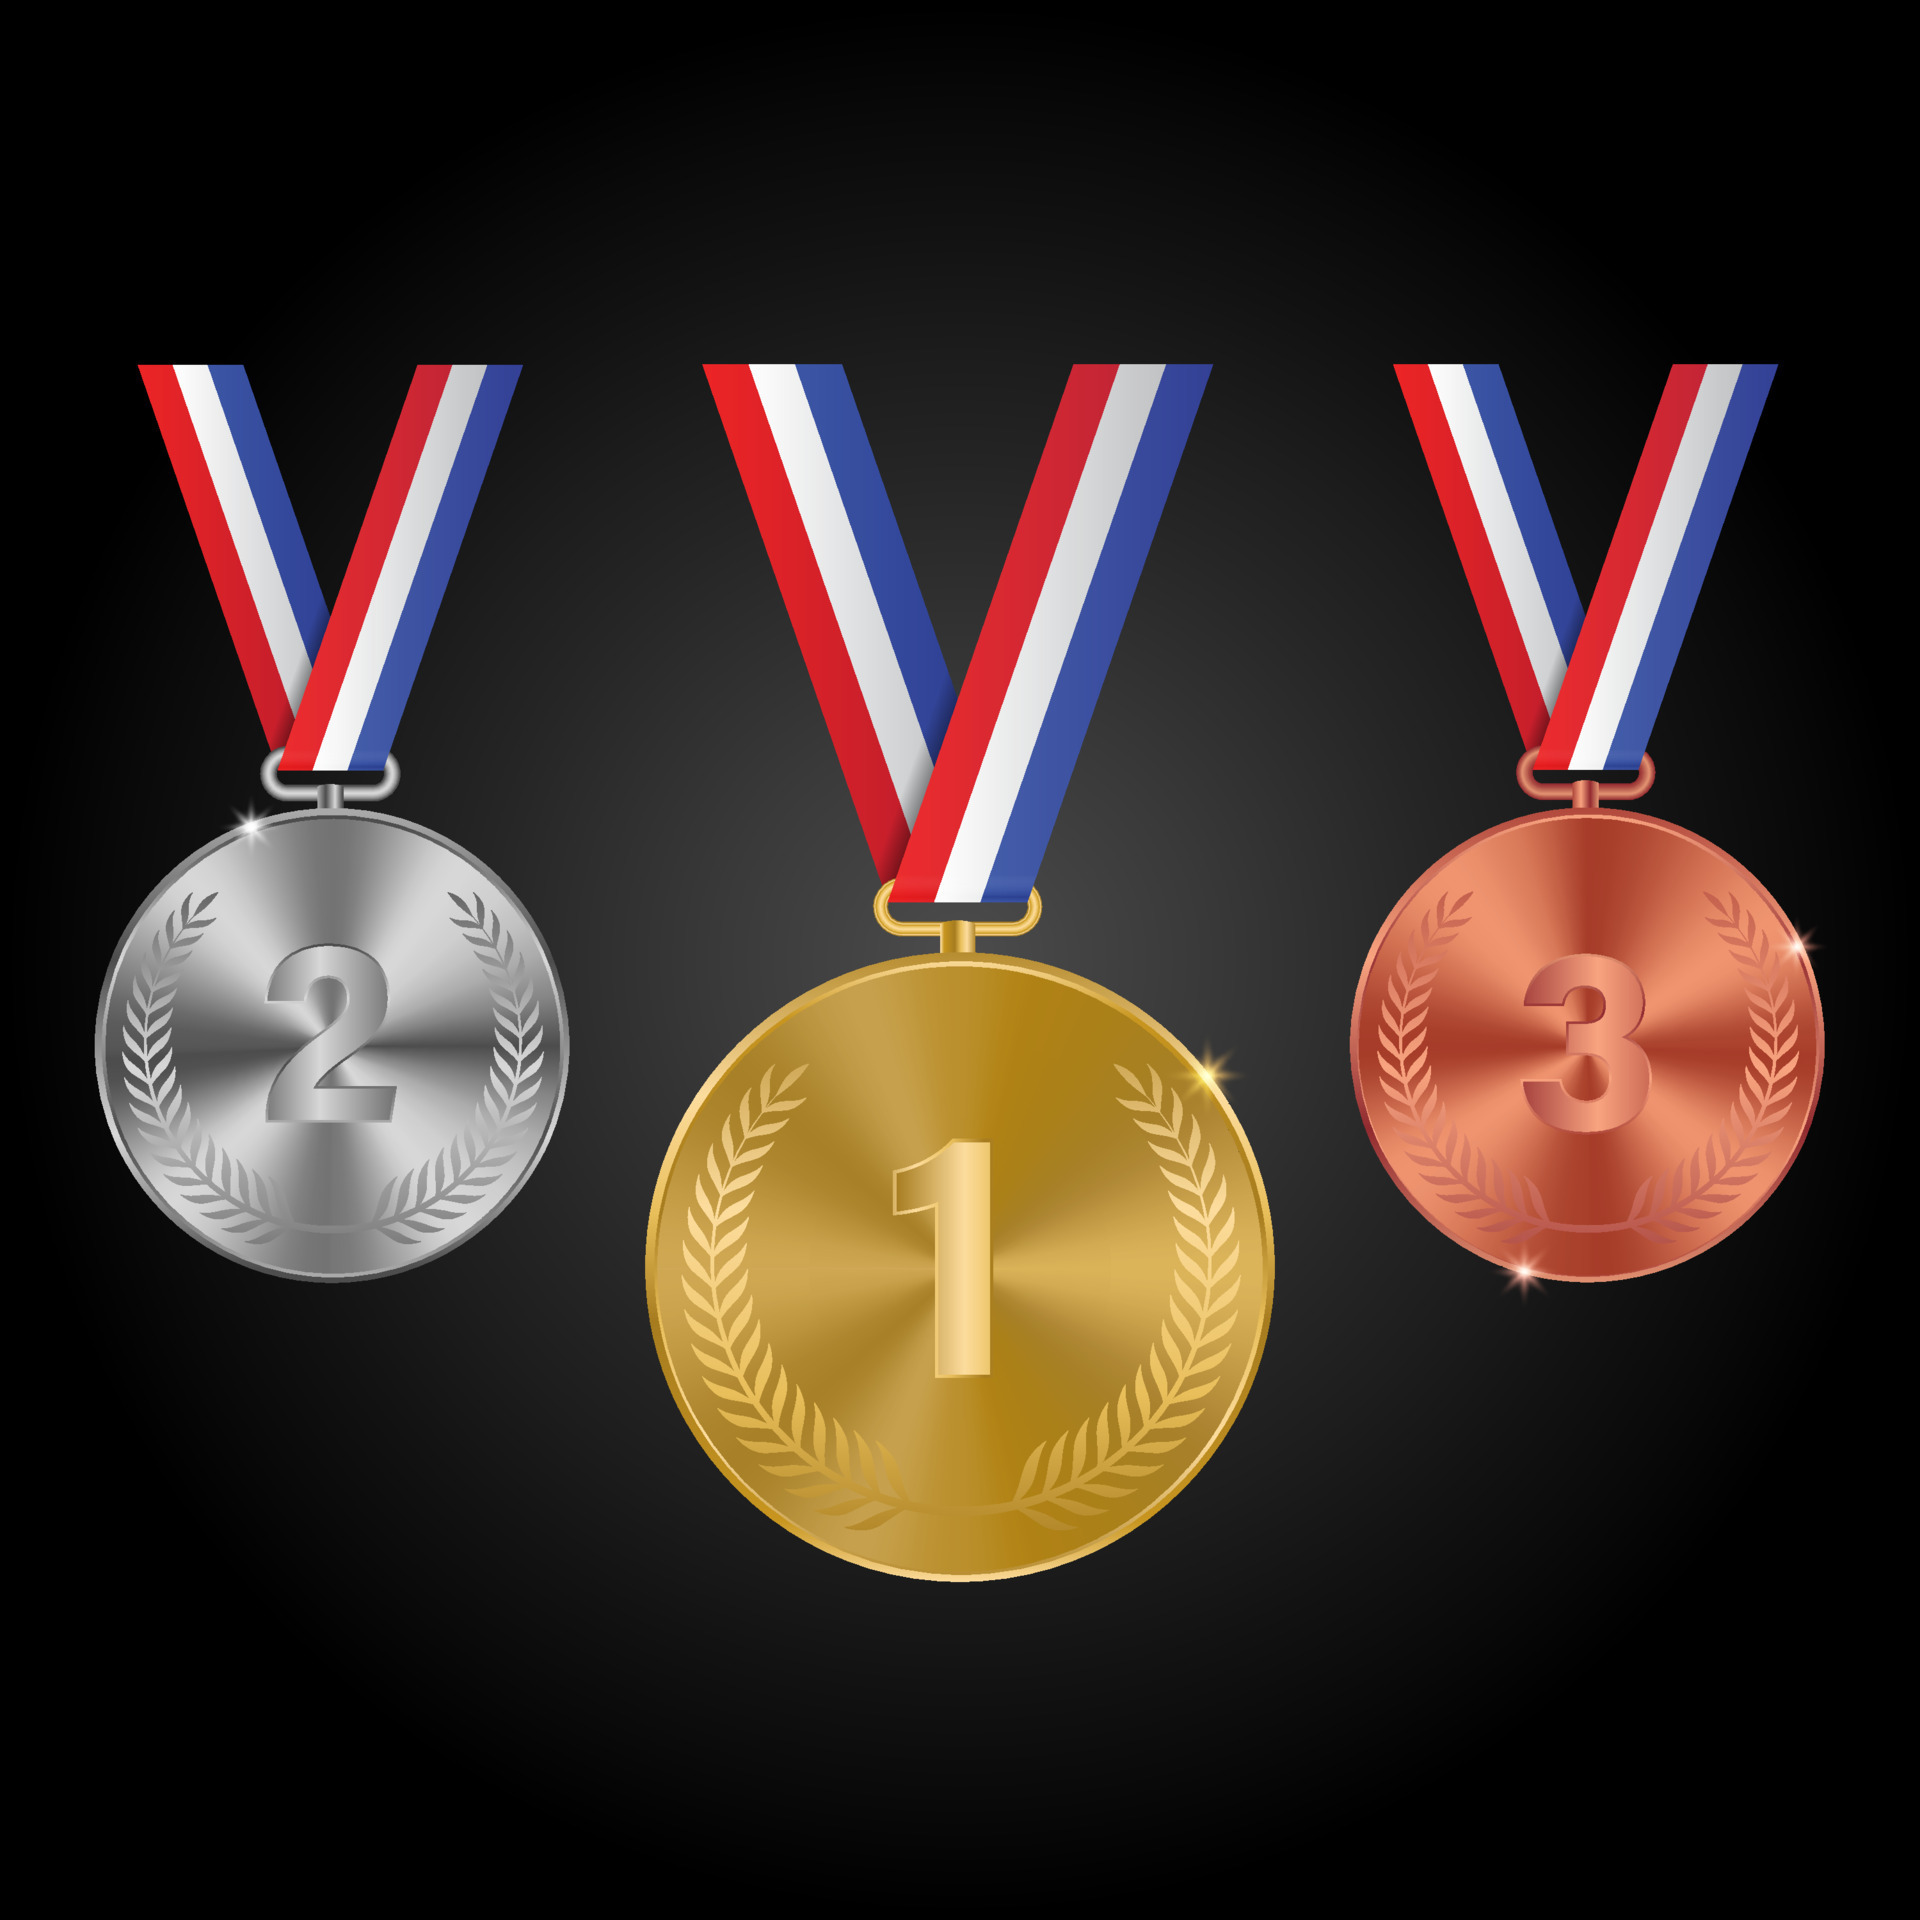 Medallas De Oro Plata Bronce. Campeón Ganador Premio Medalla De Metal.  Conjunto De Vectores Aislados Realistas De Insignias De Honor. Medalla De  Bronce, Plata Y Oro Para La Ilustración Del Premio Del